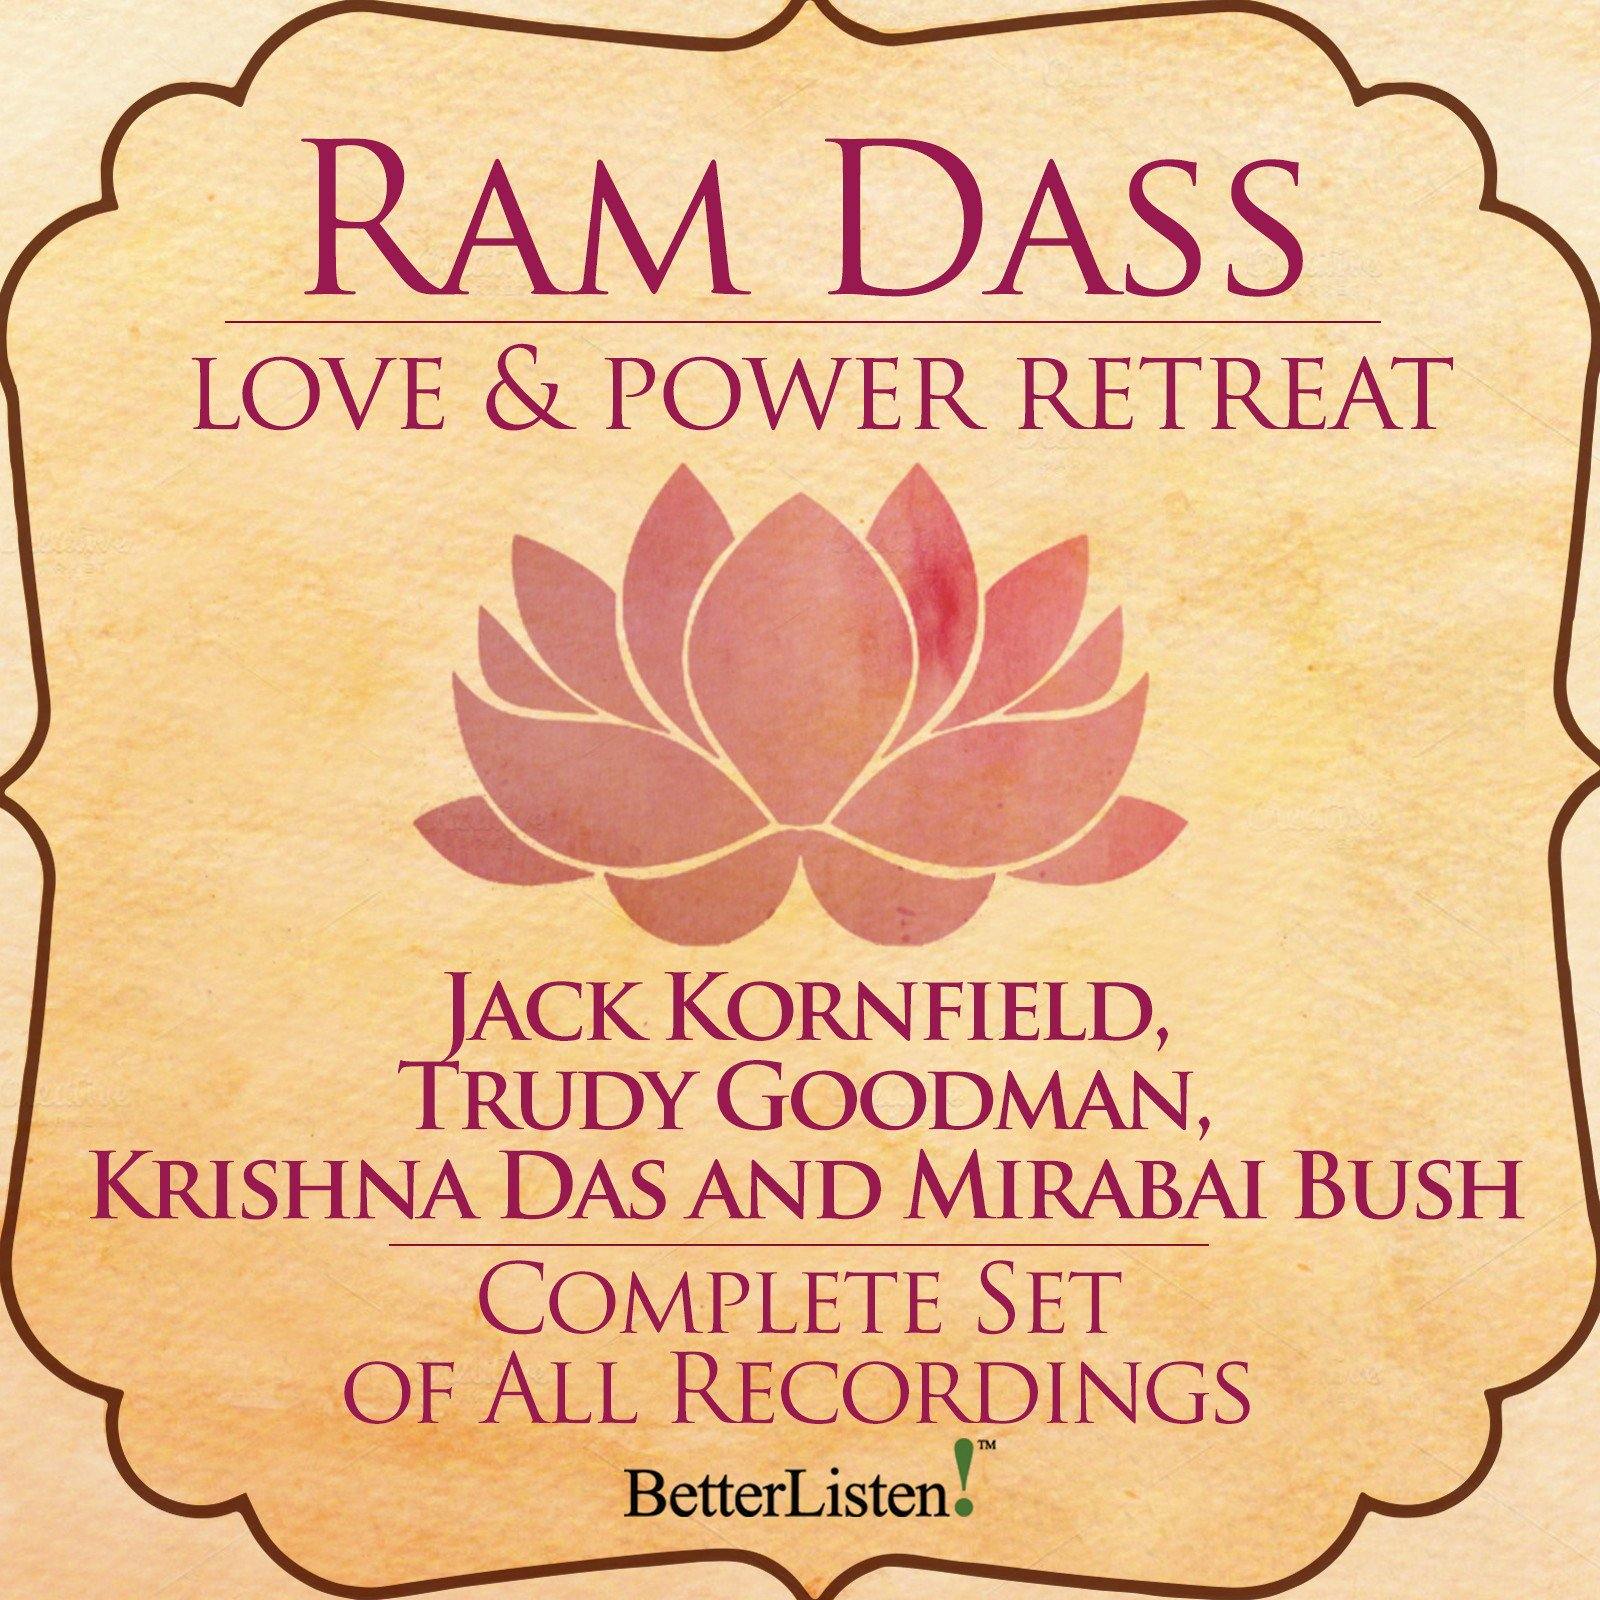 Love and Power Retreat featuring Ram Dass Complete Set Audio Program Ram Dass LSR - BetterListen!